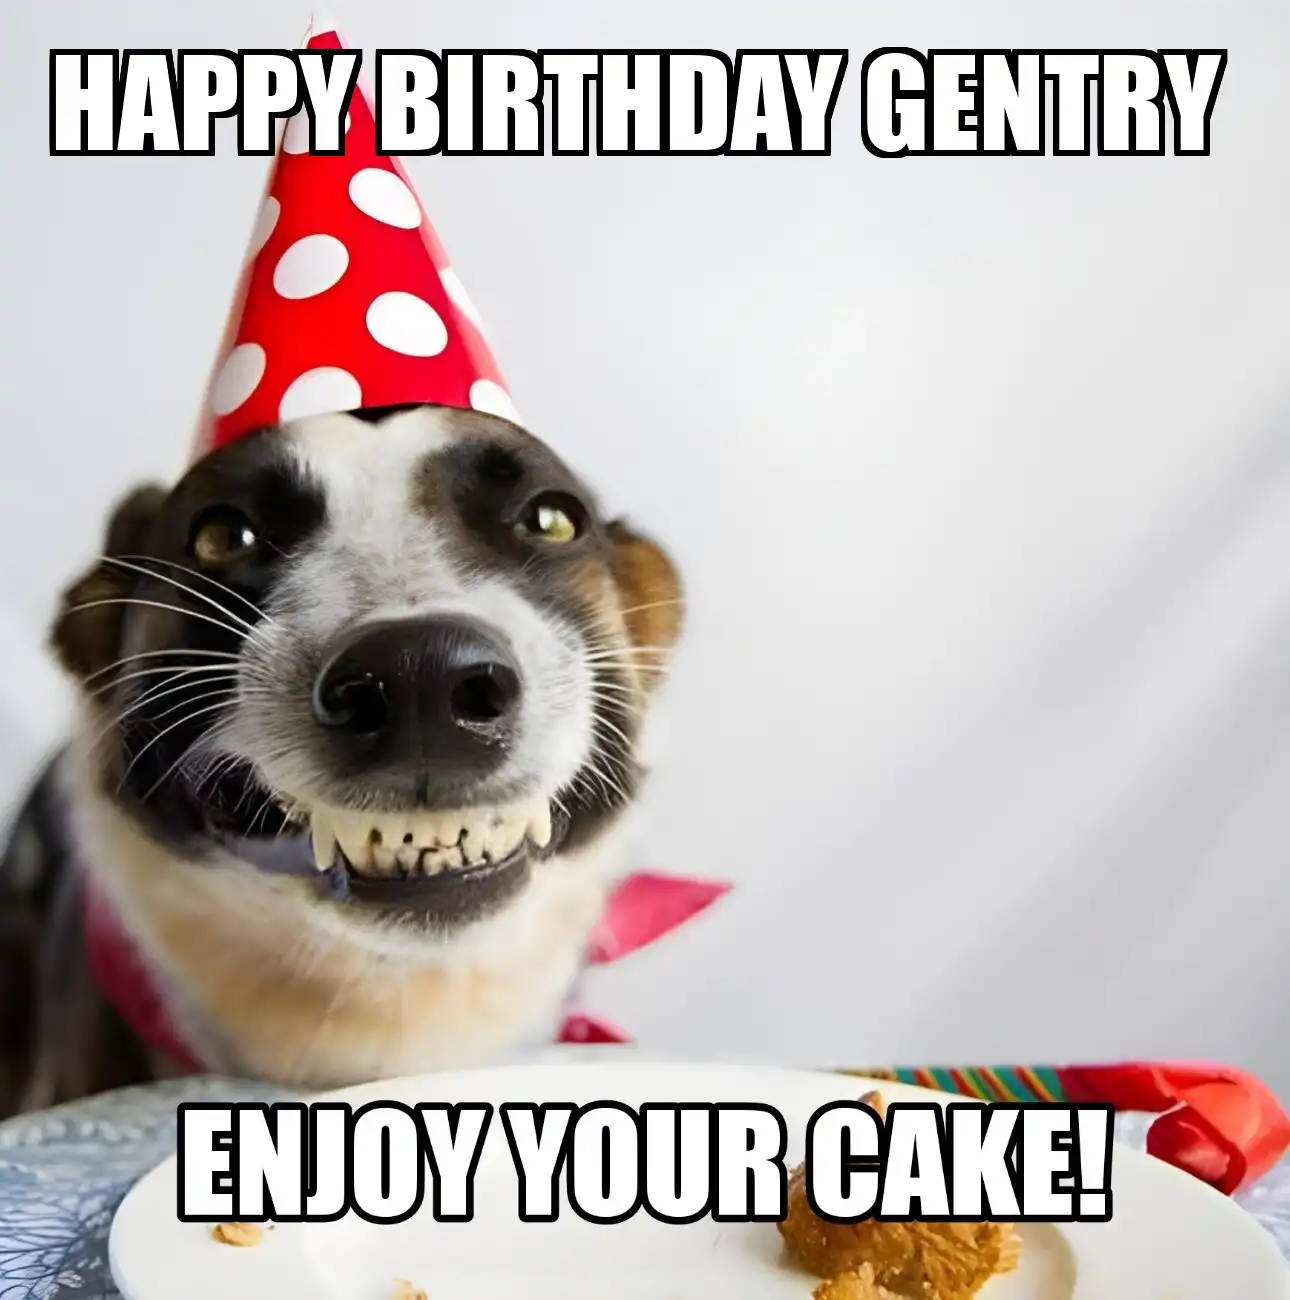 Happy Birthday Gentry Enjoy Your Cake Dog Meme